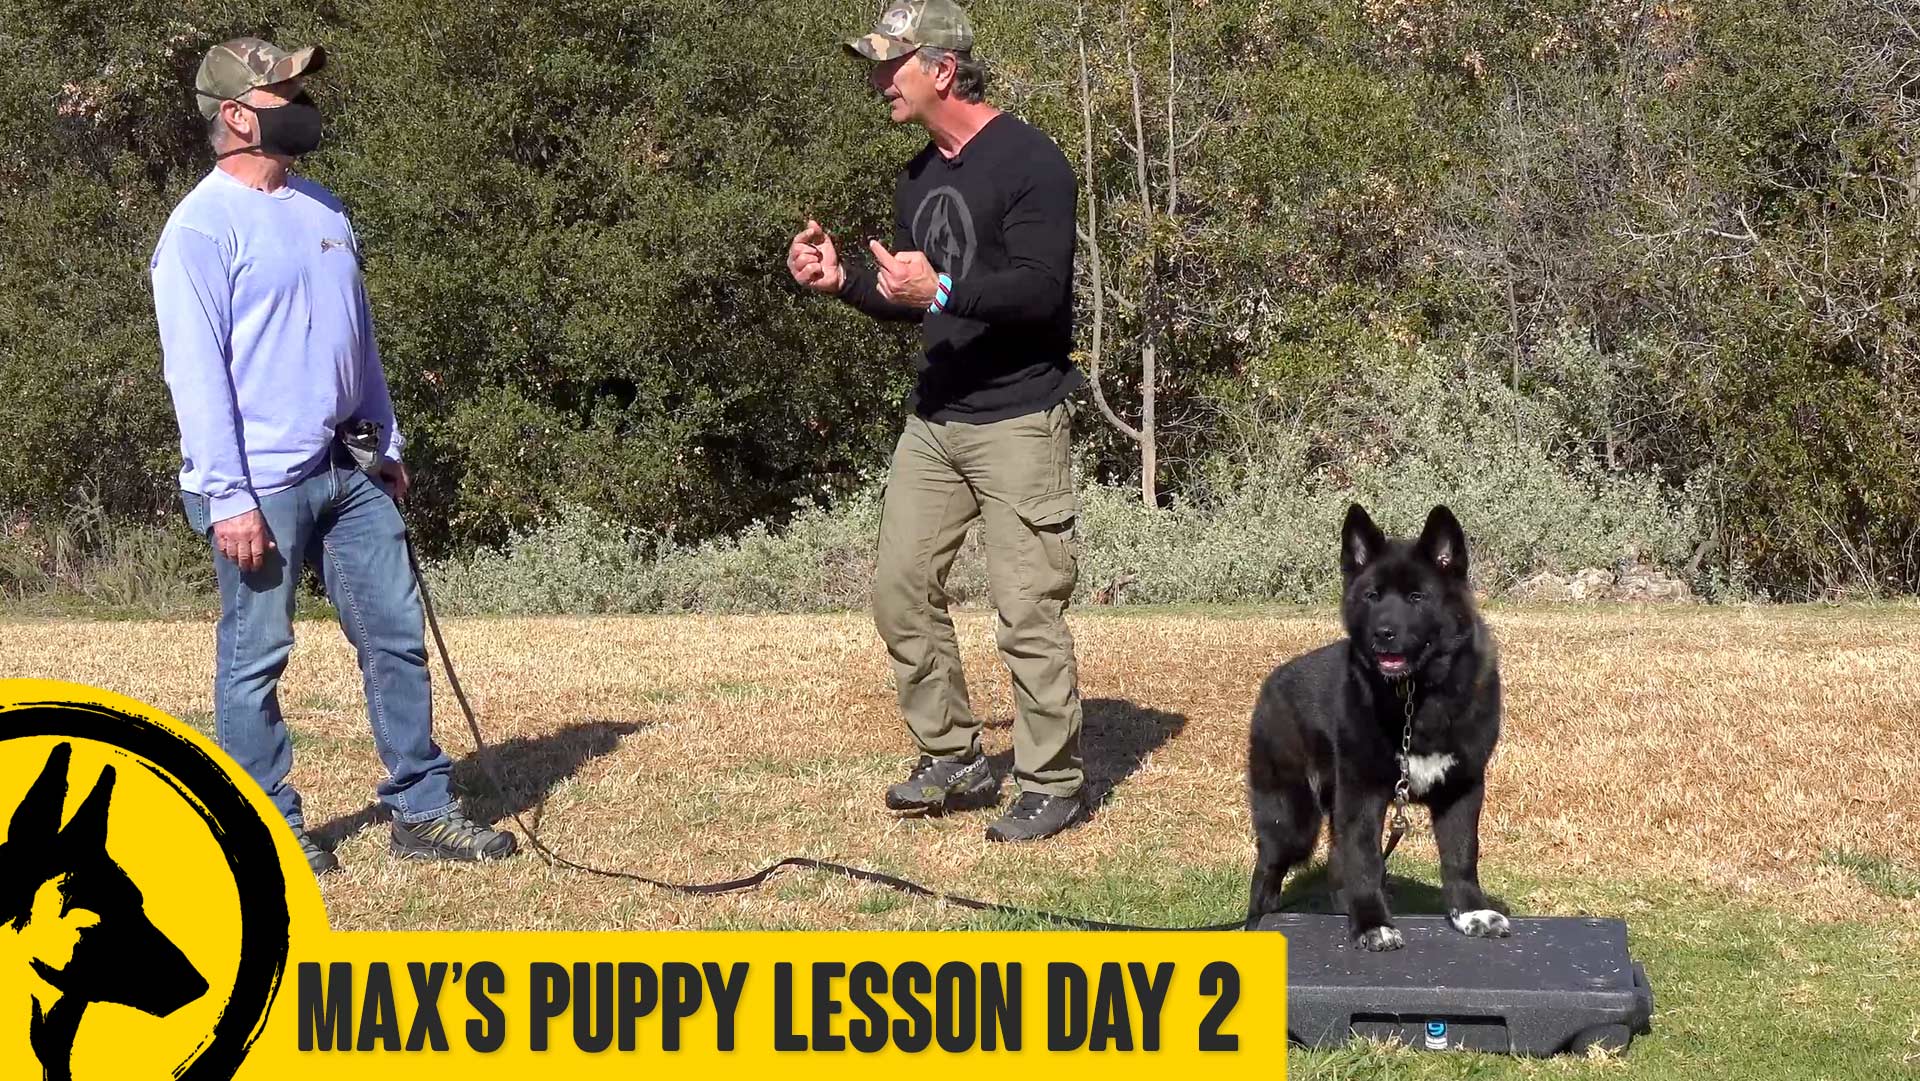 Max’s Puppy Lesson Day 2